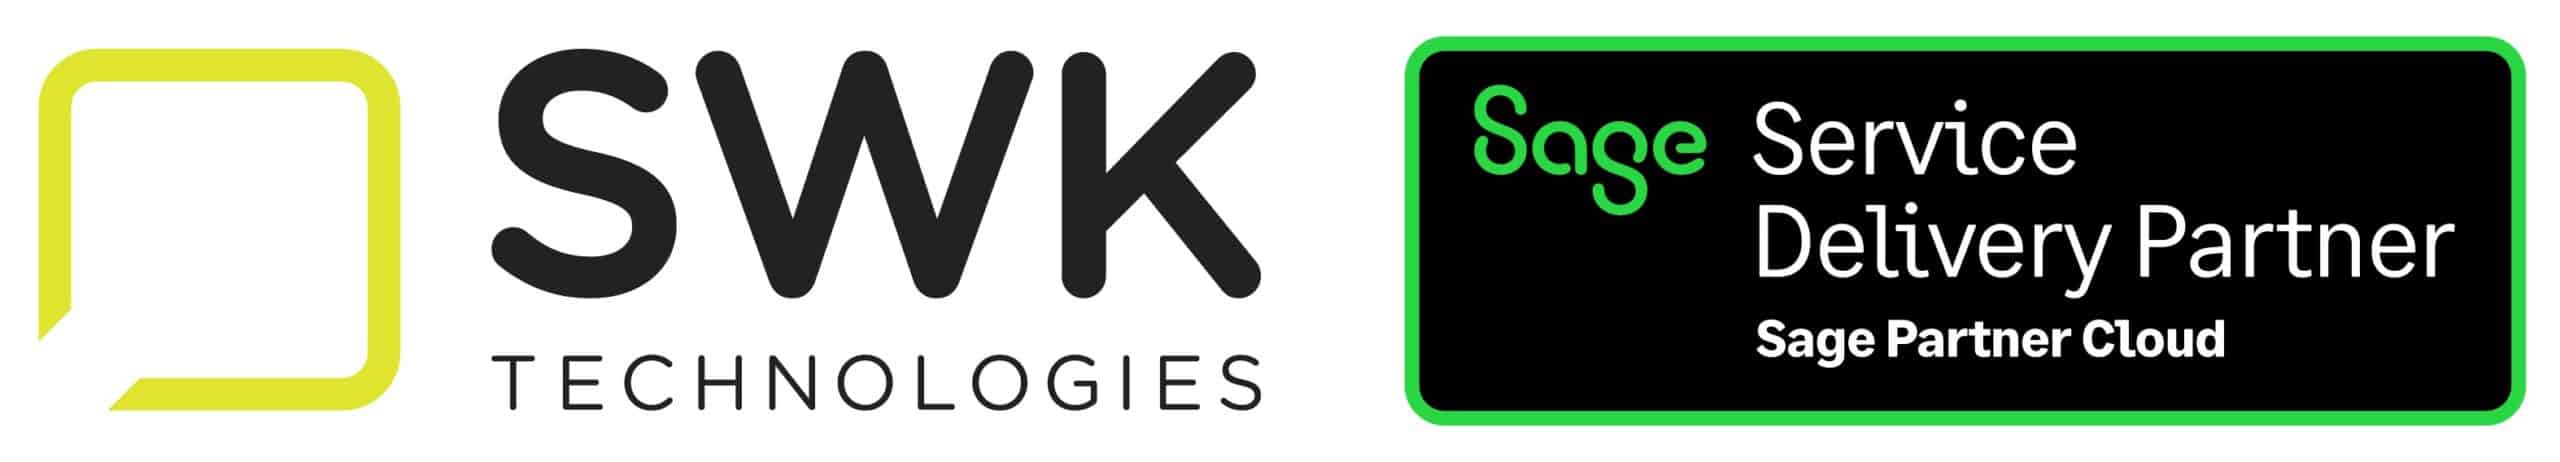 swk-technologies-sage-partner-cloud-service-delivery-strategic-hosting-provider-secure-cloud-hosting